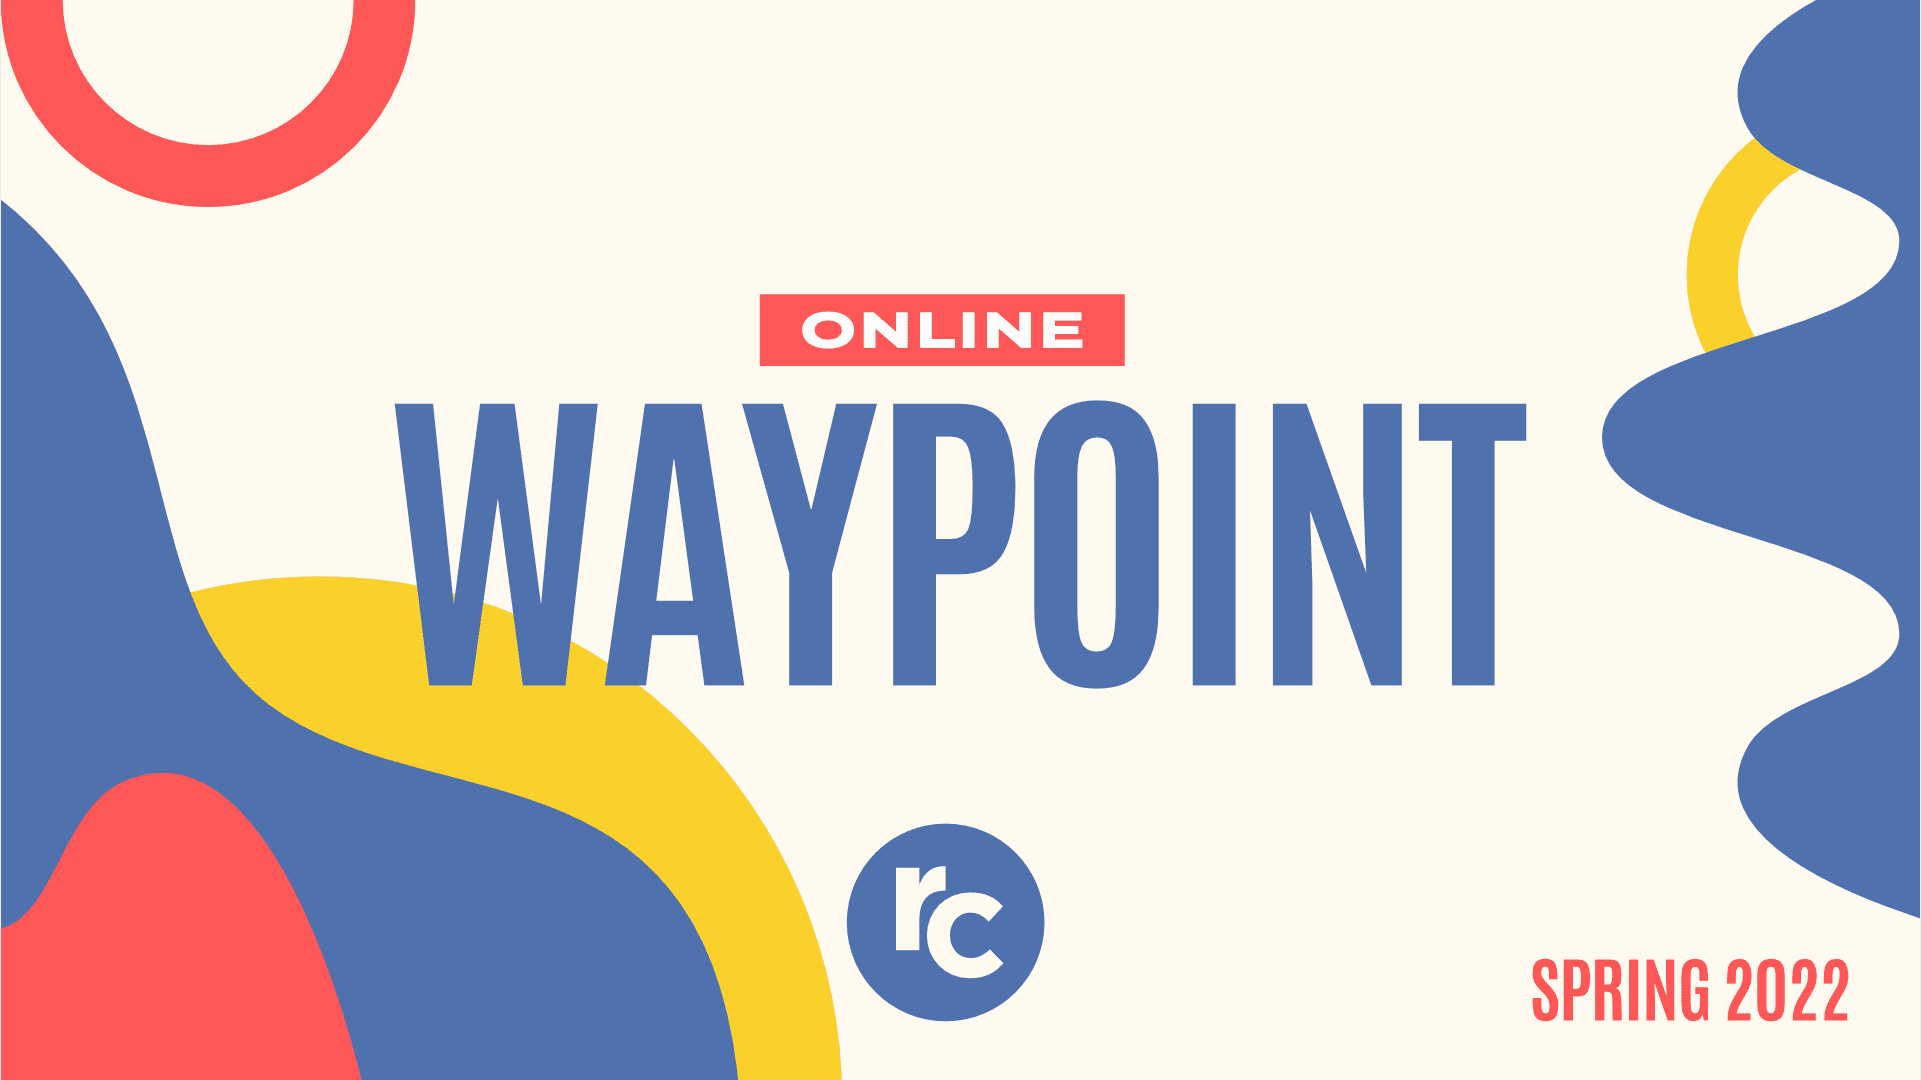 Online Waypoint: Spring 2022